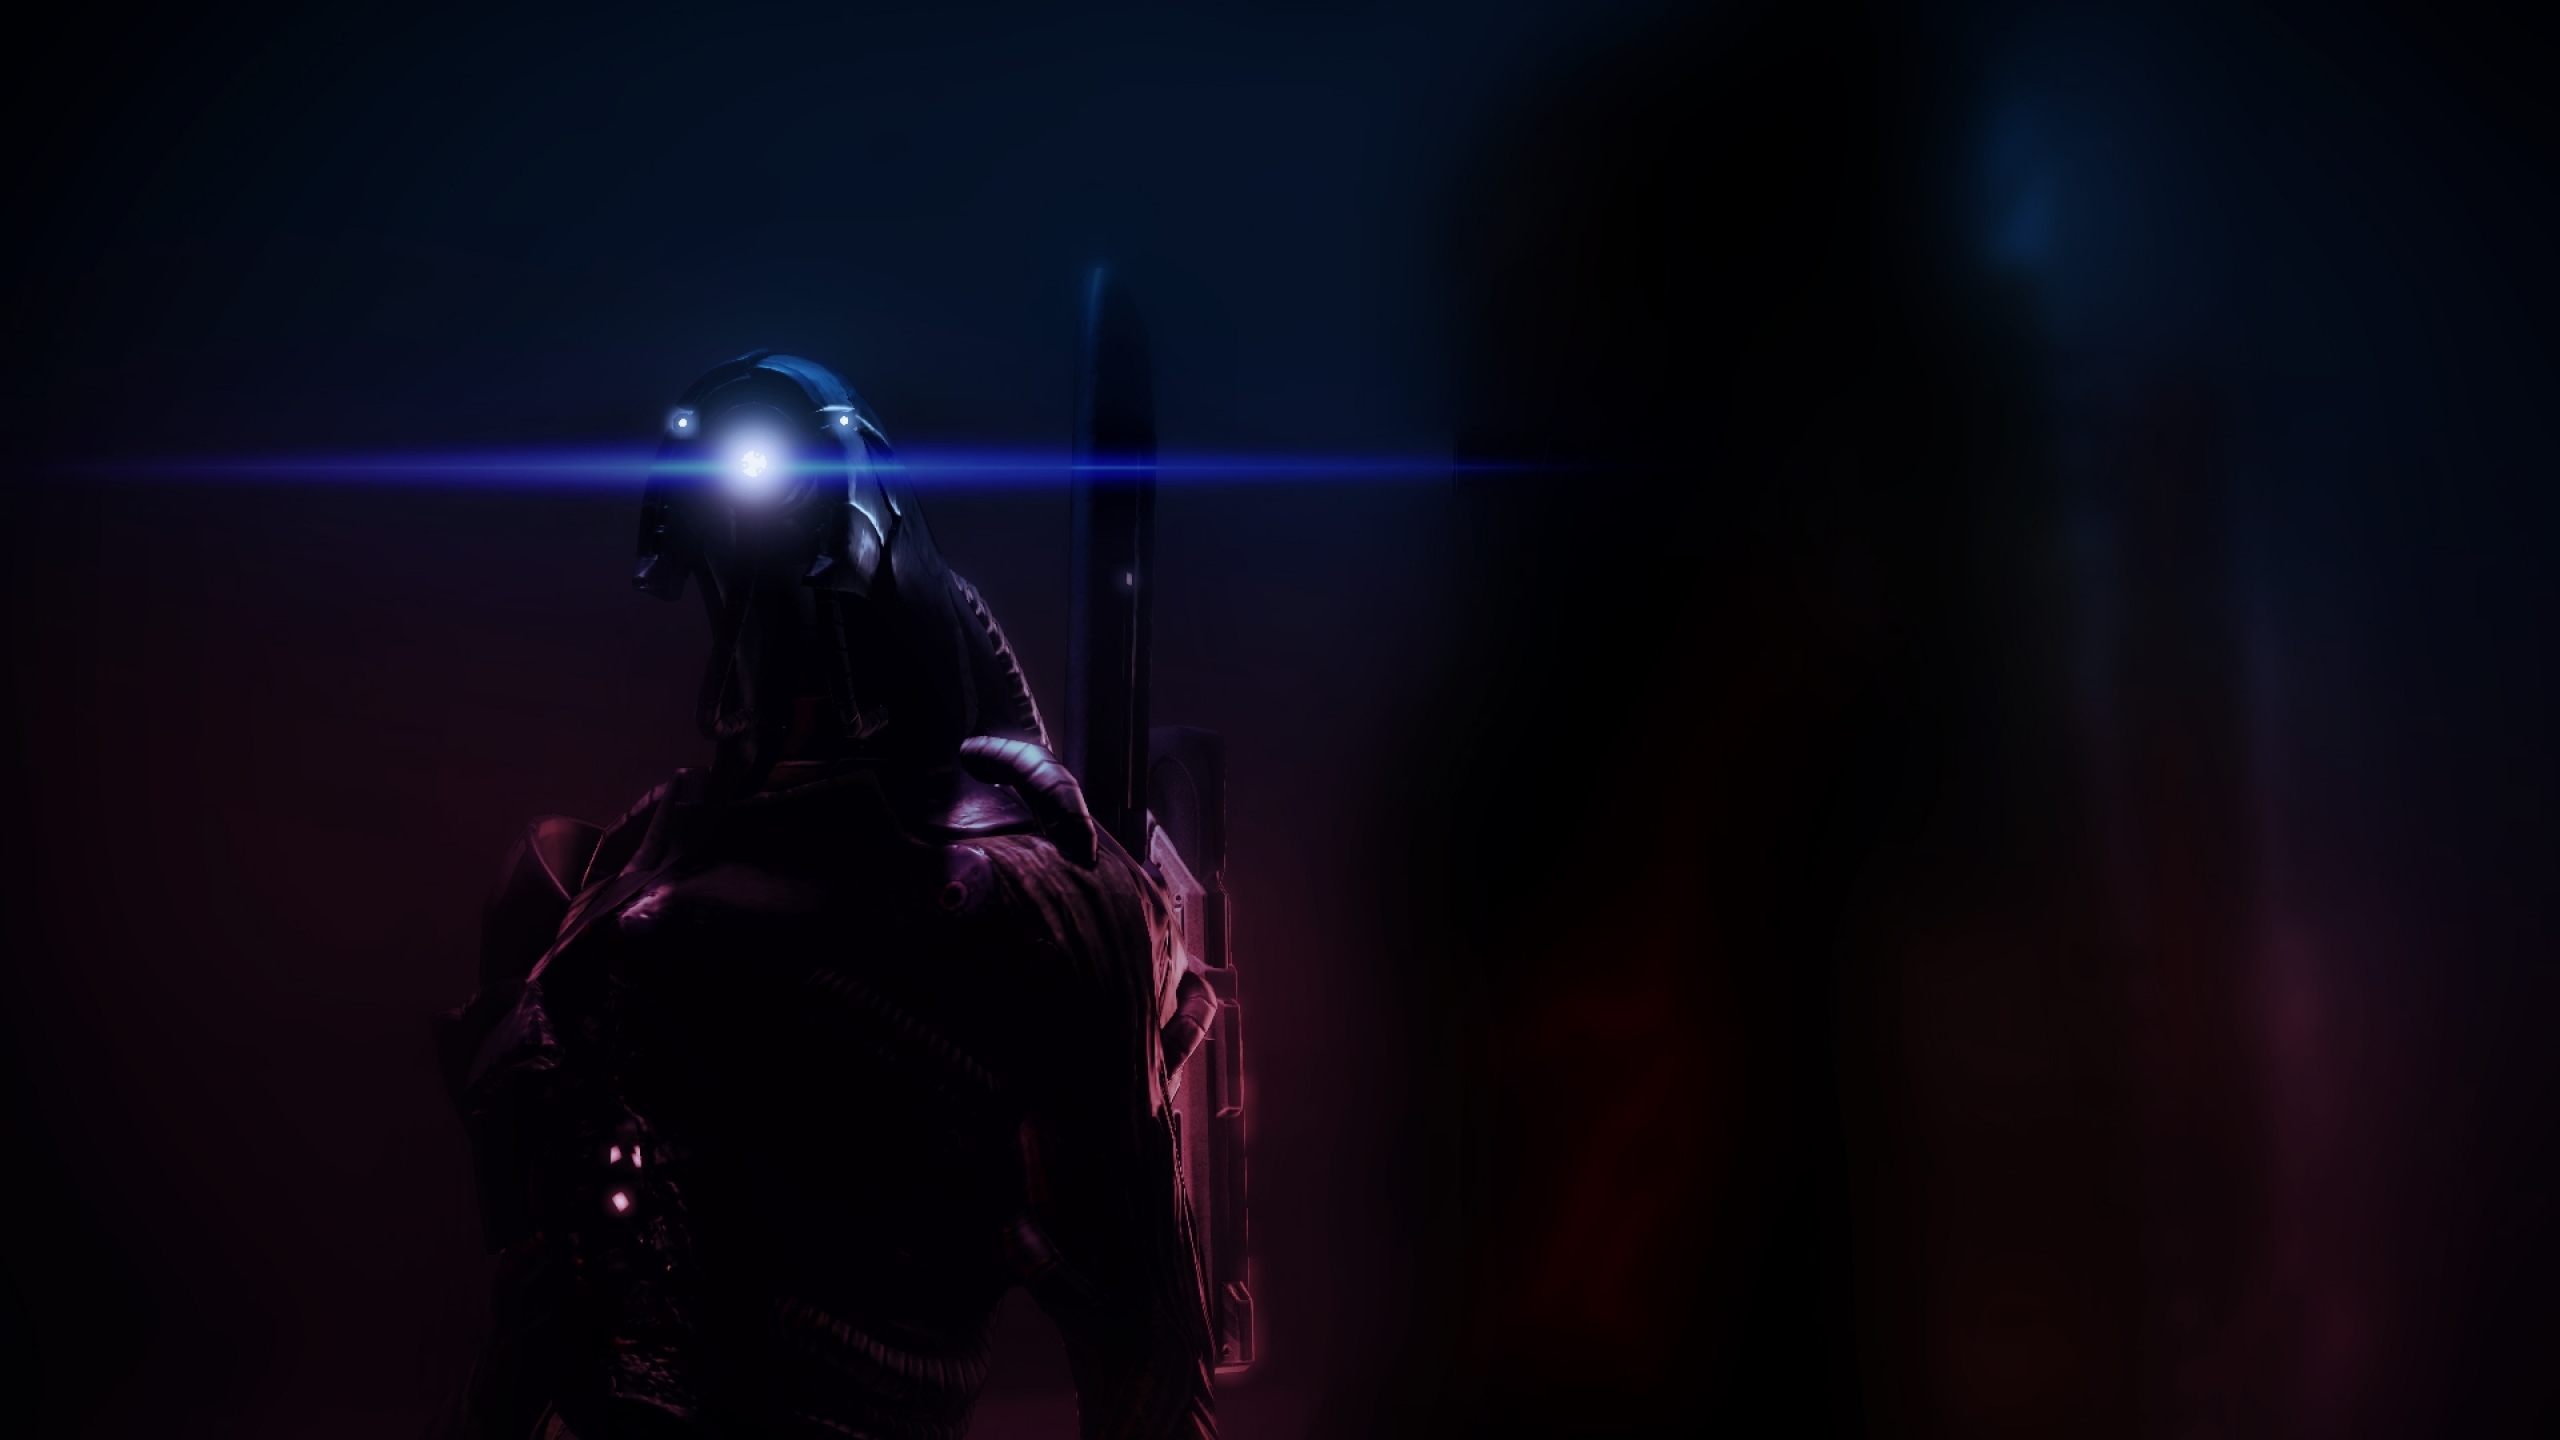 Legion Mass Effect Wallpaper